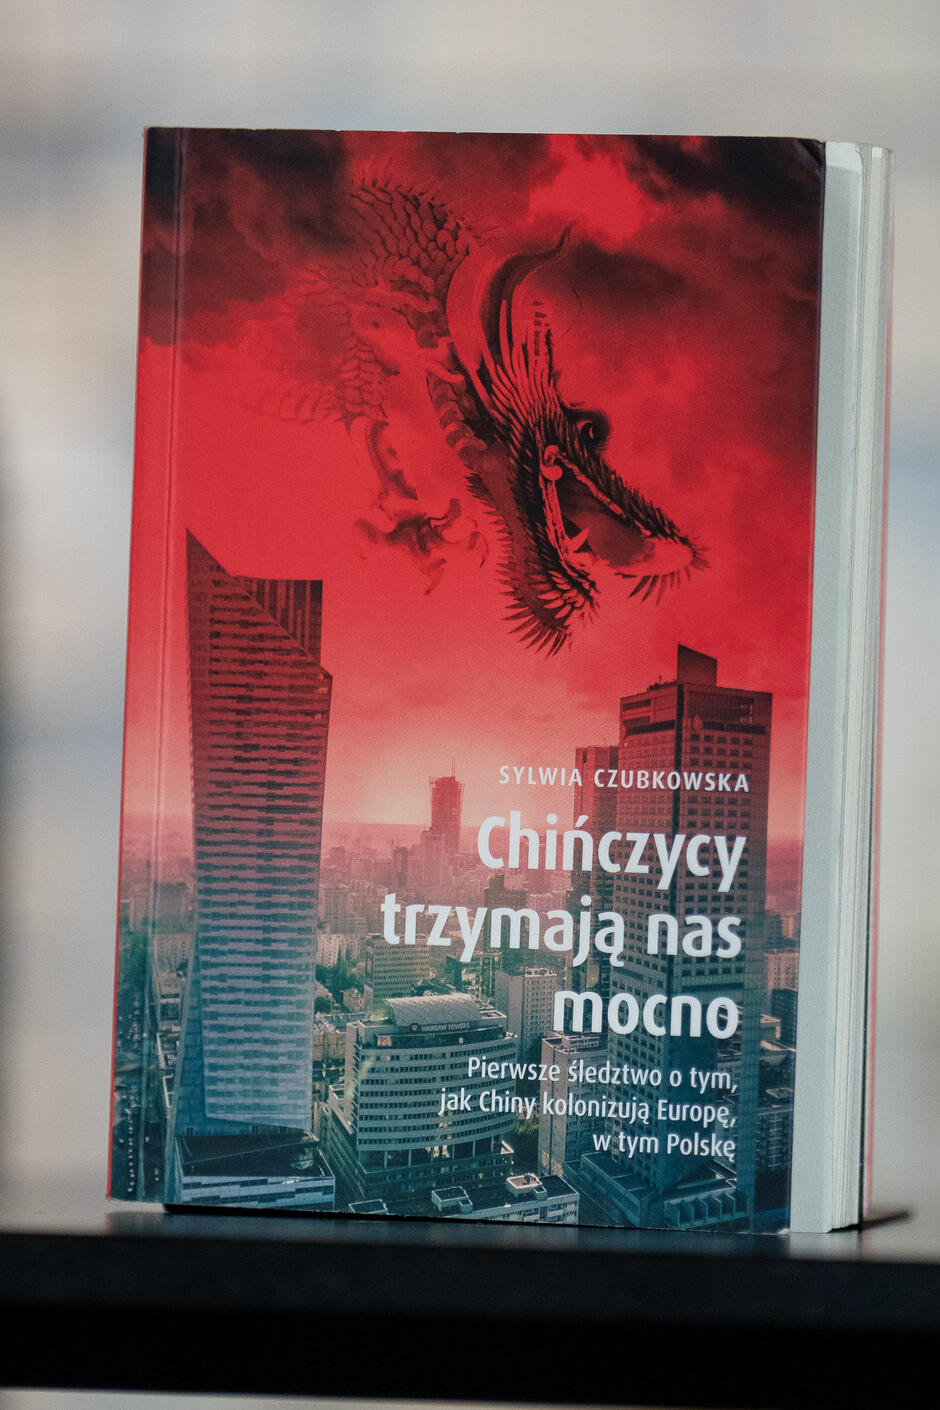 Okładka książki Sylwii Czubkowskiej „Chińczycy trzymają nas mocno. Pierwsze śledztwo o tym, jak Chiny kolonizują Europę, w tym Polskę”. Na okładce widać wieżowce, nad którymi leci chiński smok.